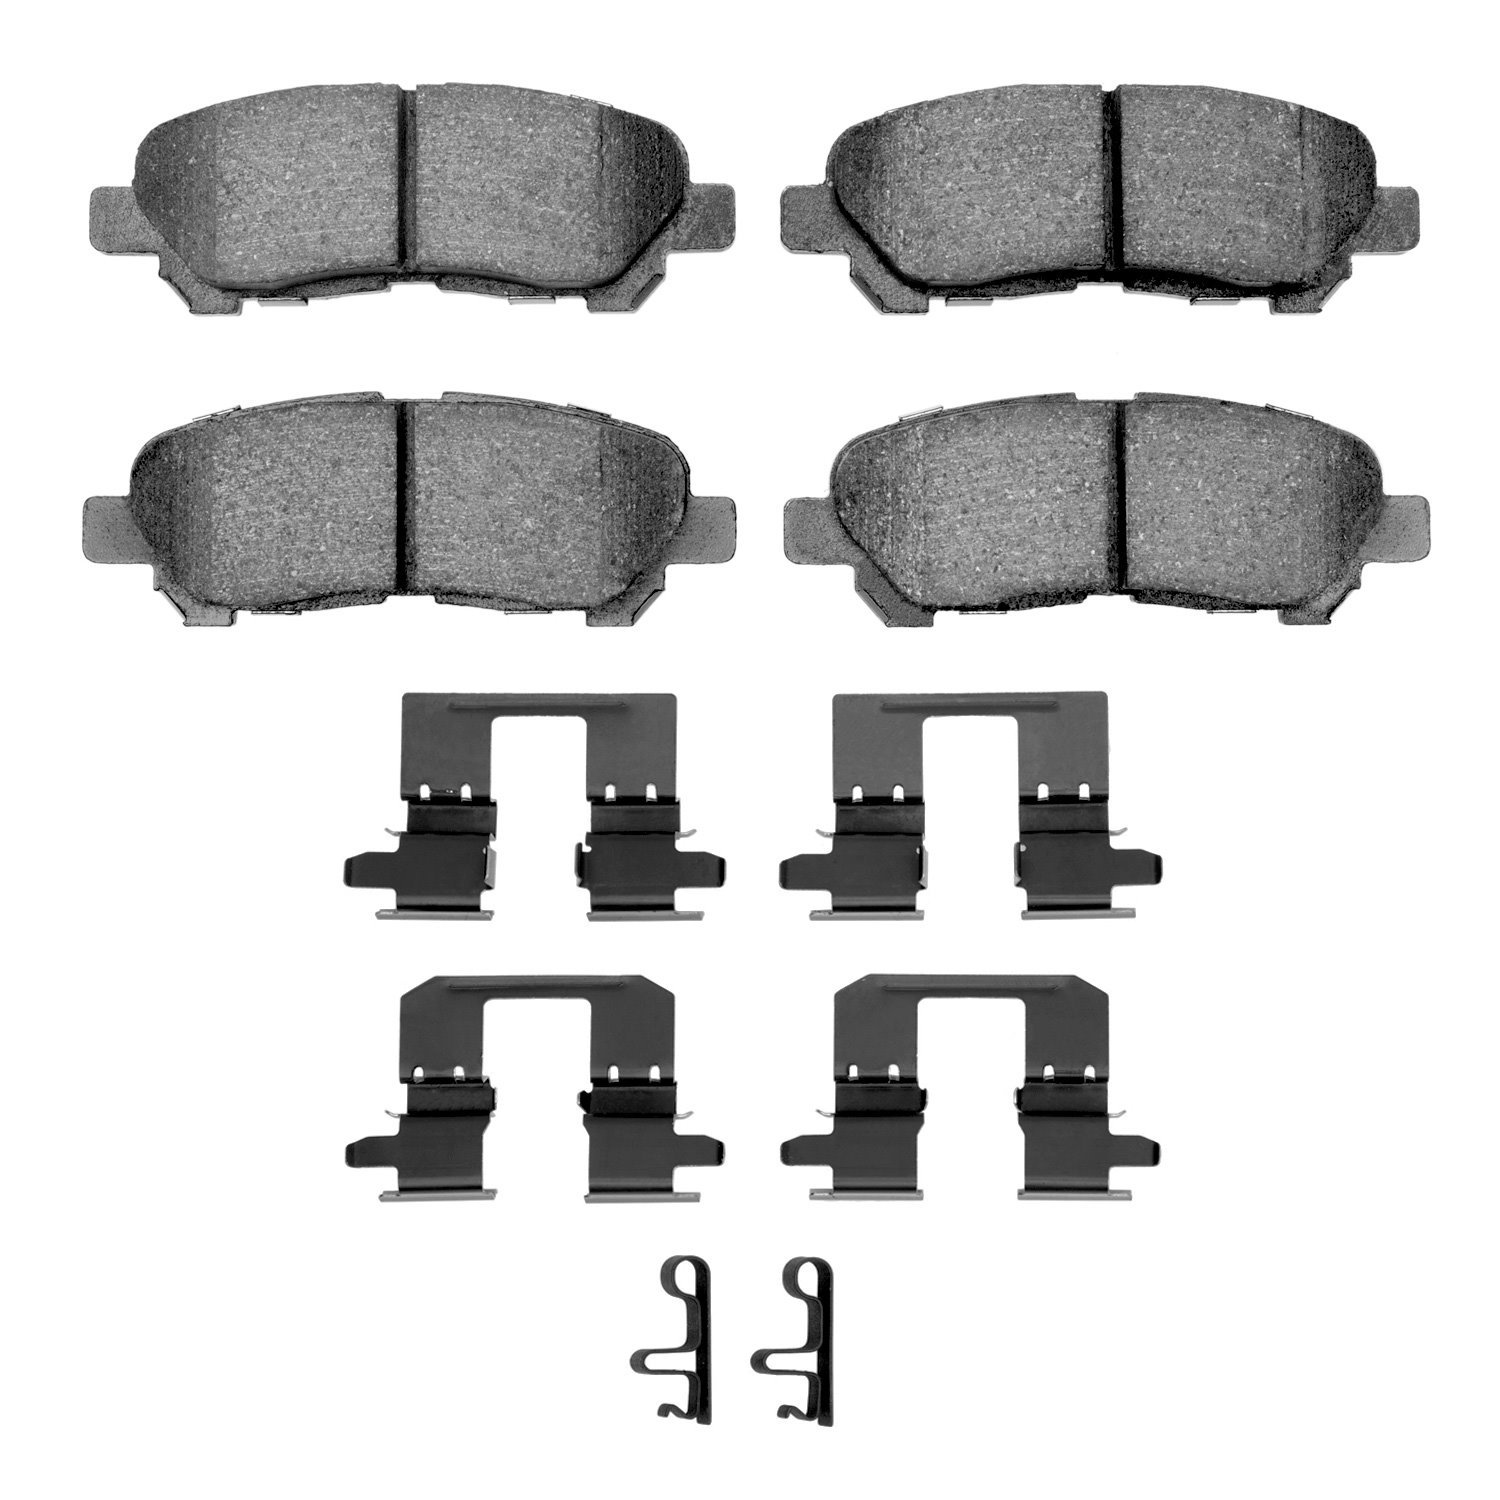 1310-1325-01 3000-Series Ceramic Brake Pads & Hardware Kit, 2008-2013 Lexus/Toyota/Scion, Position: Rear